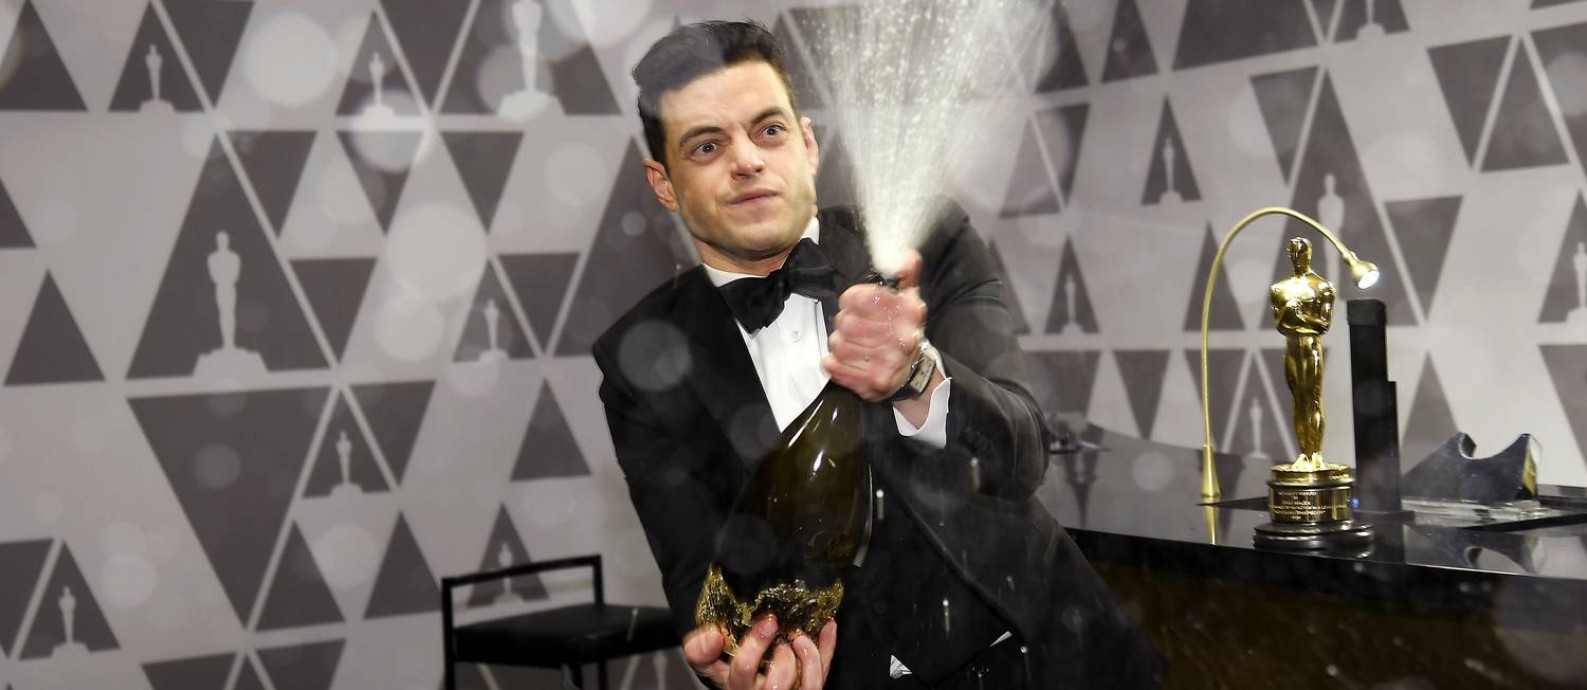 Vencedor do Oscar de melhor ator, Rami Malek comemora no Governors Ball, festa oficial do evento Foto: KEVORK DJANSEZIAN / AFP